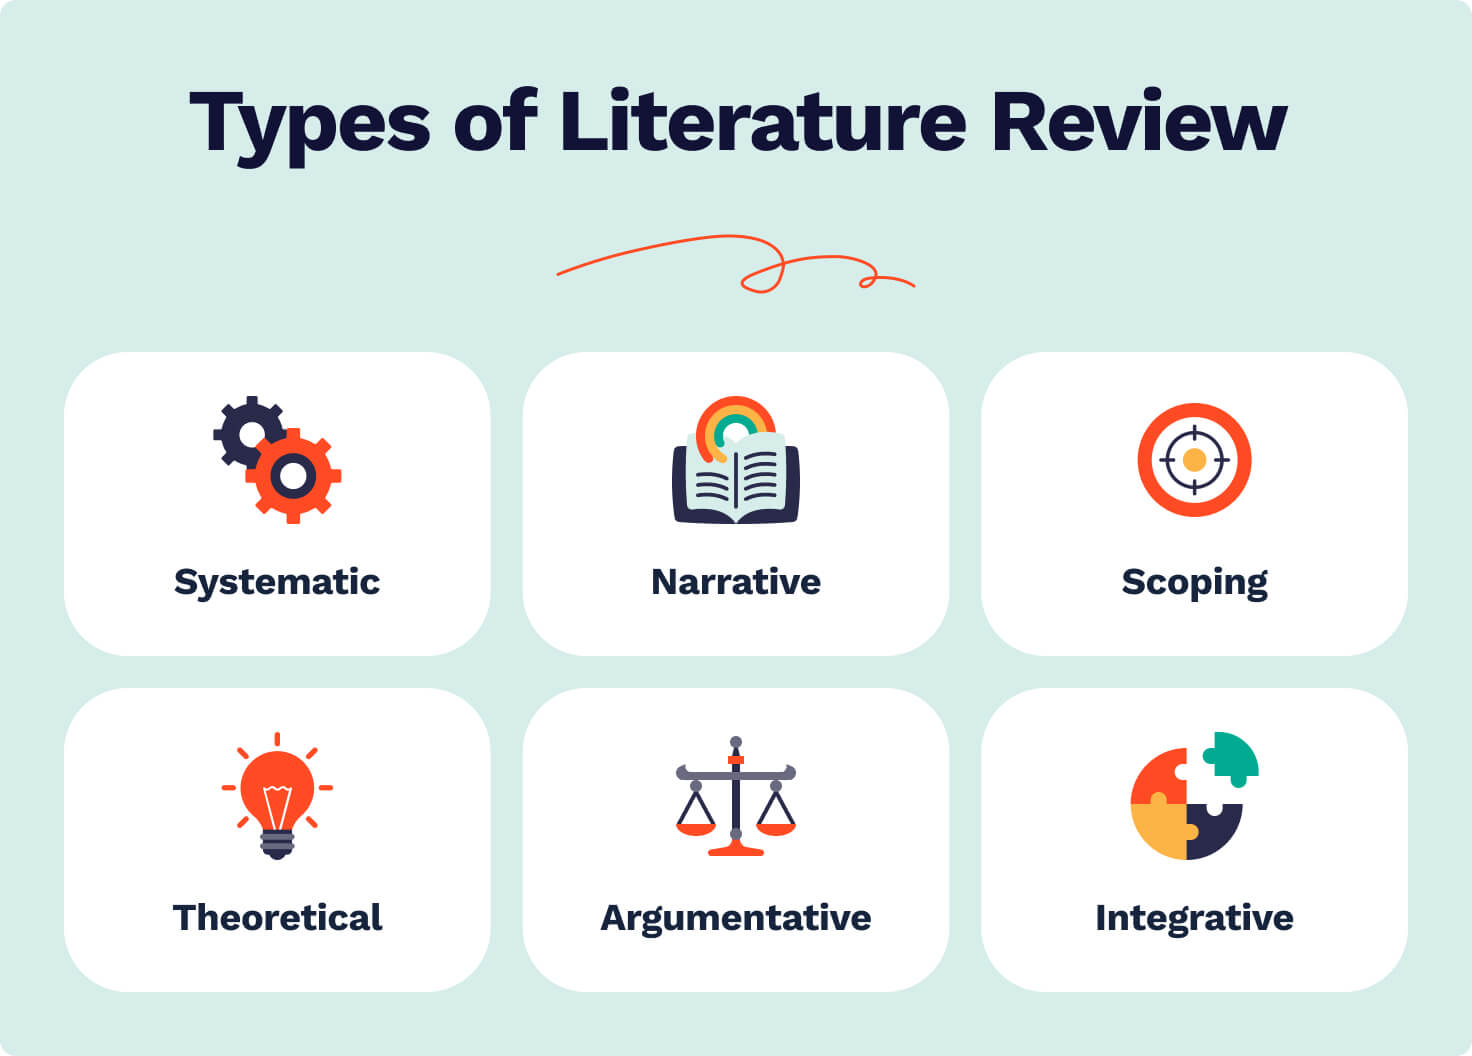 literature review vs survey